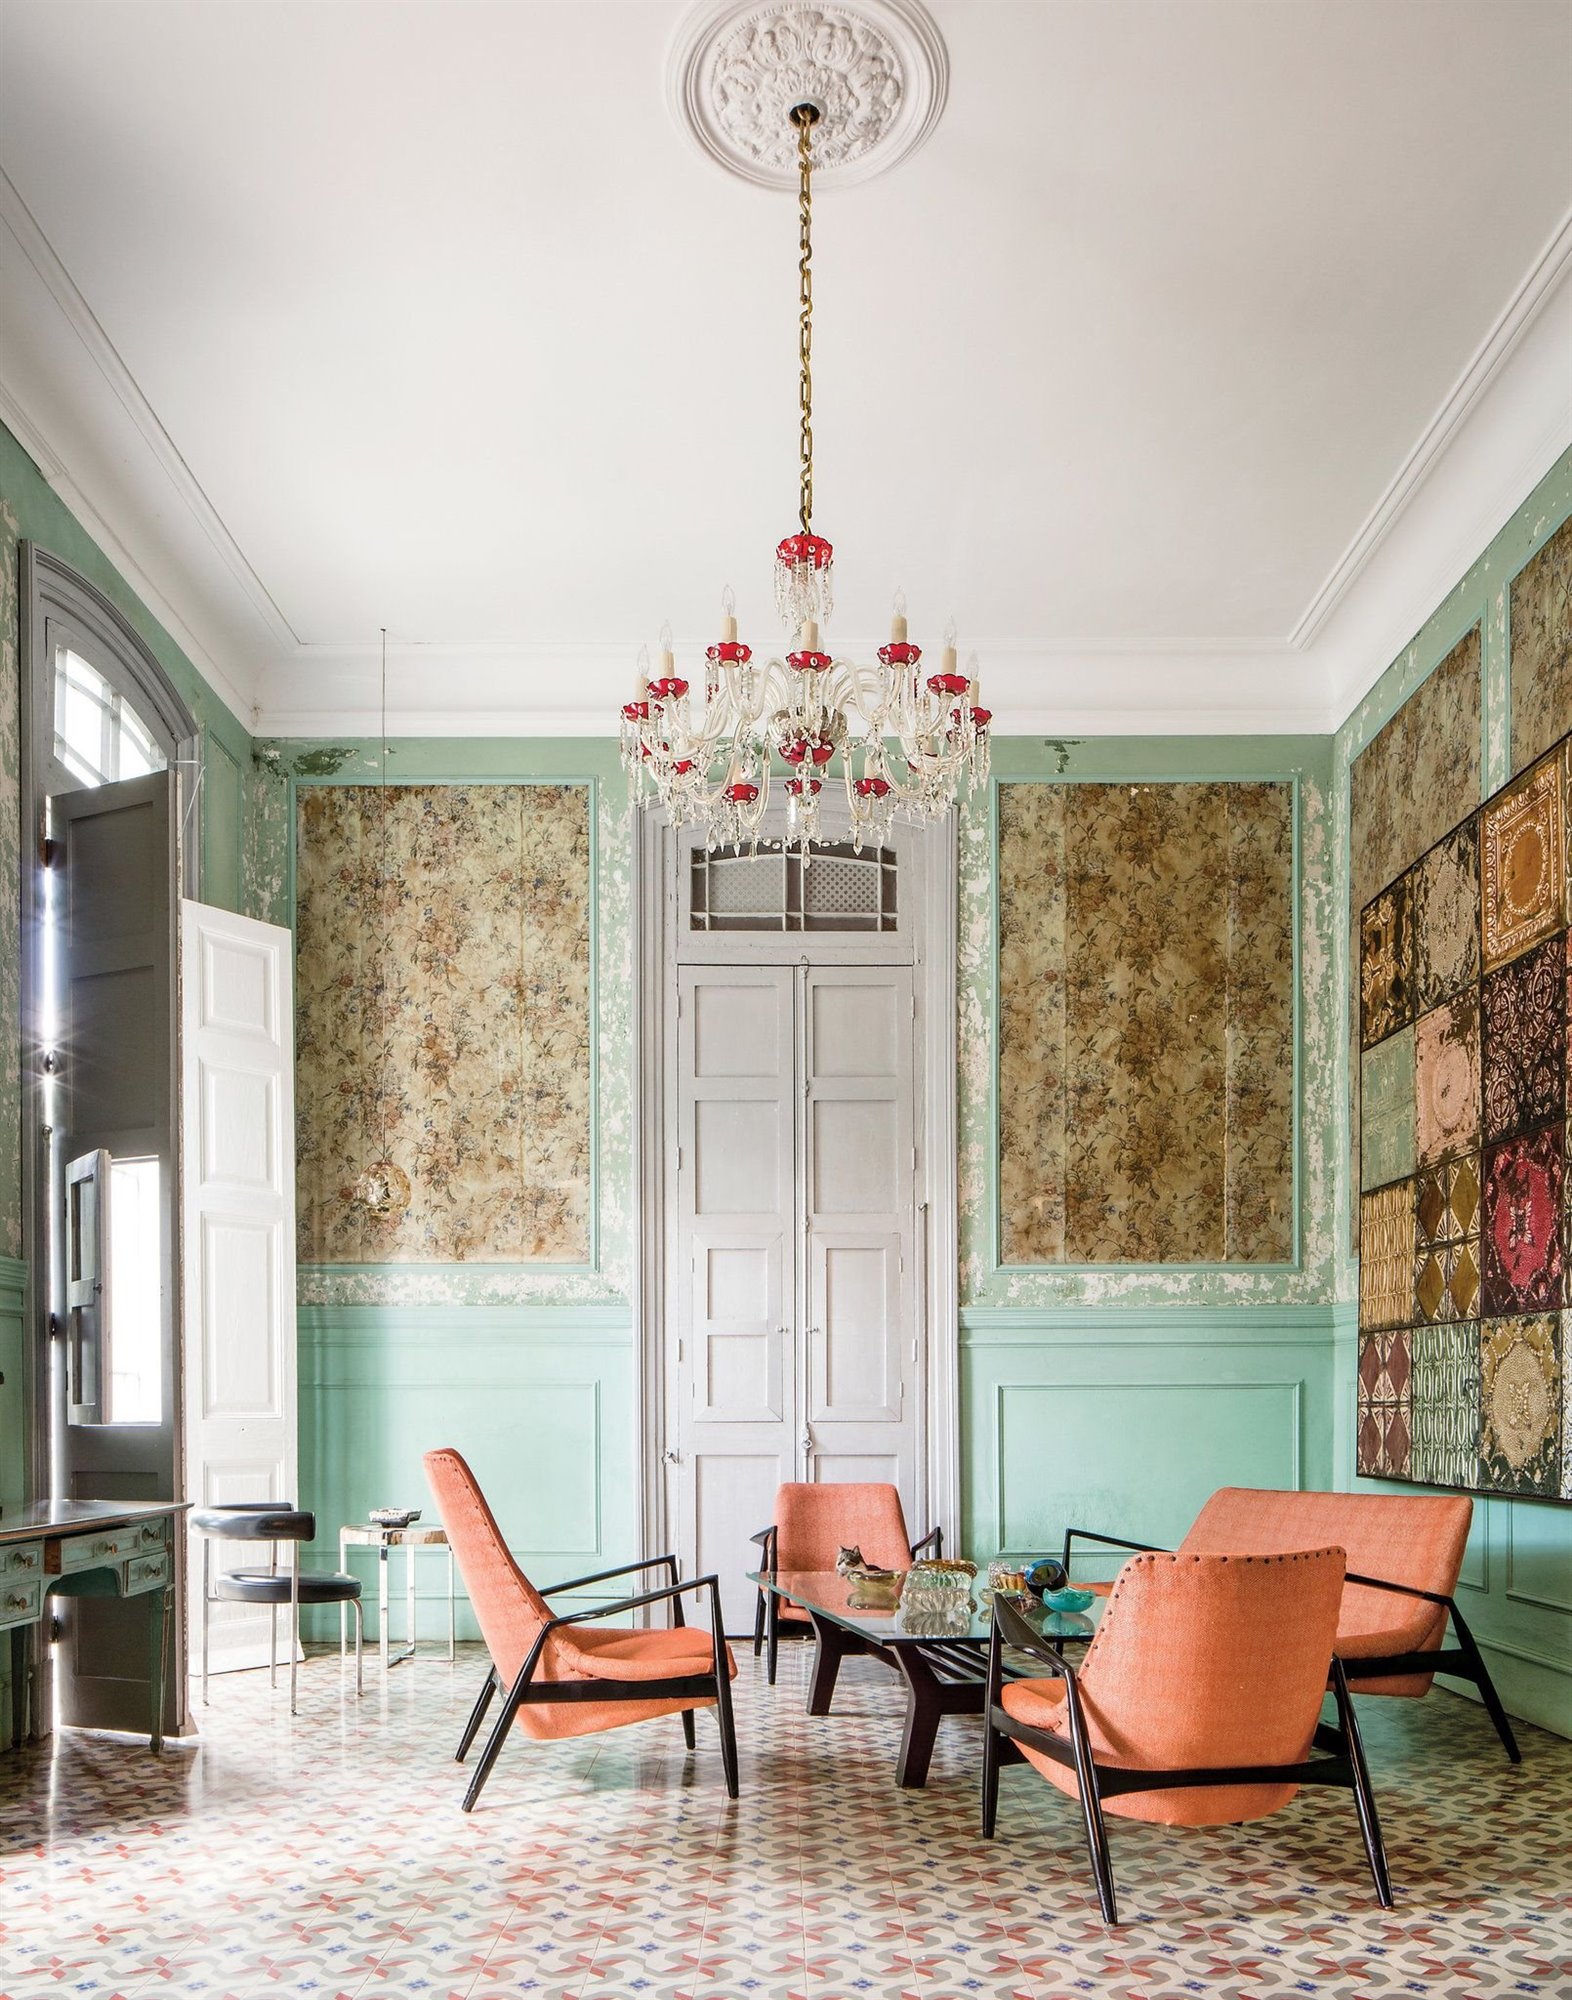 Salon con lampara de araña y paredes en color turquesa